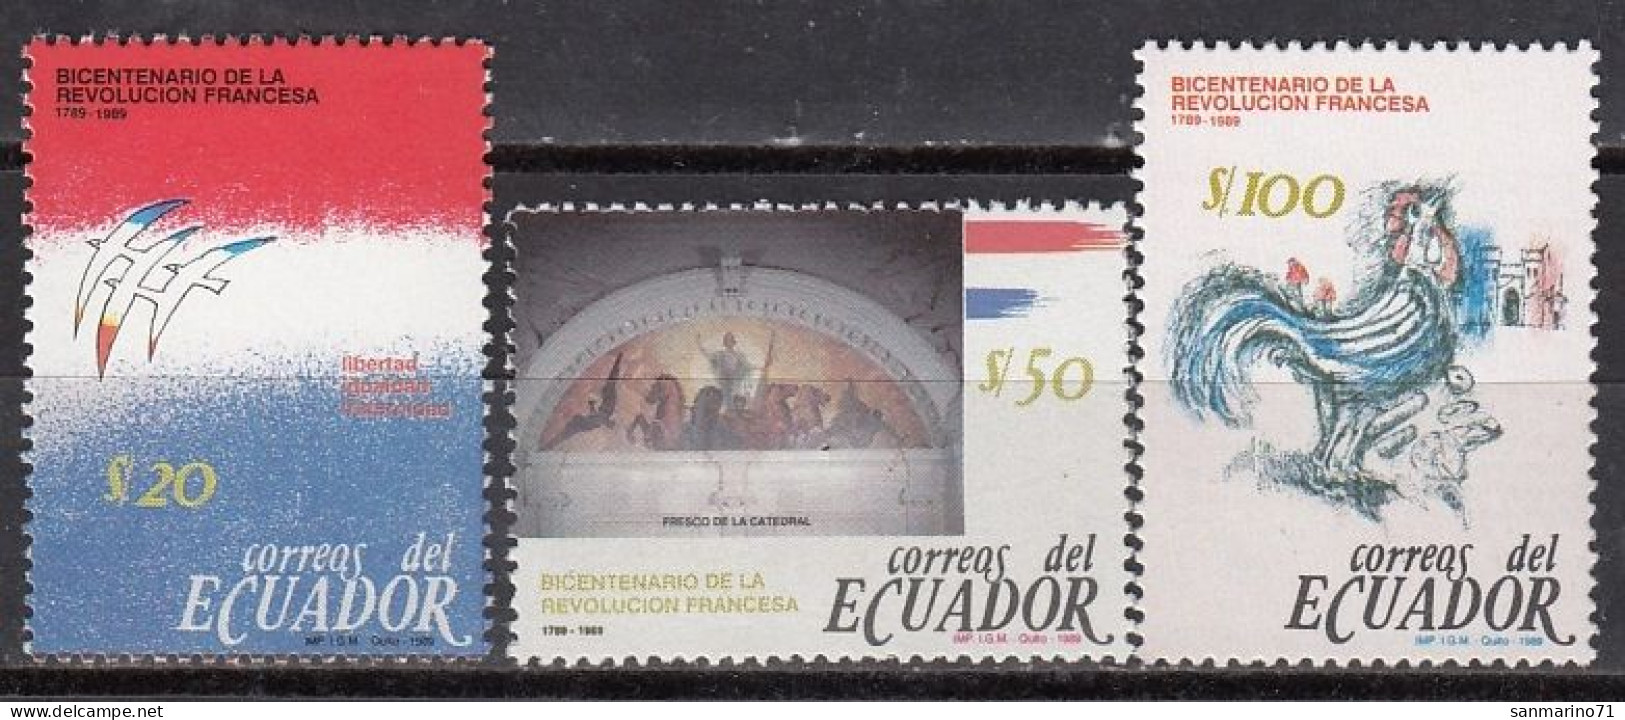 ECUADOR 2129-2131,unused - Franz. Revolution